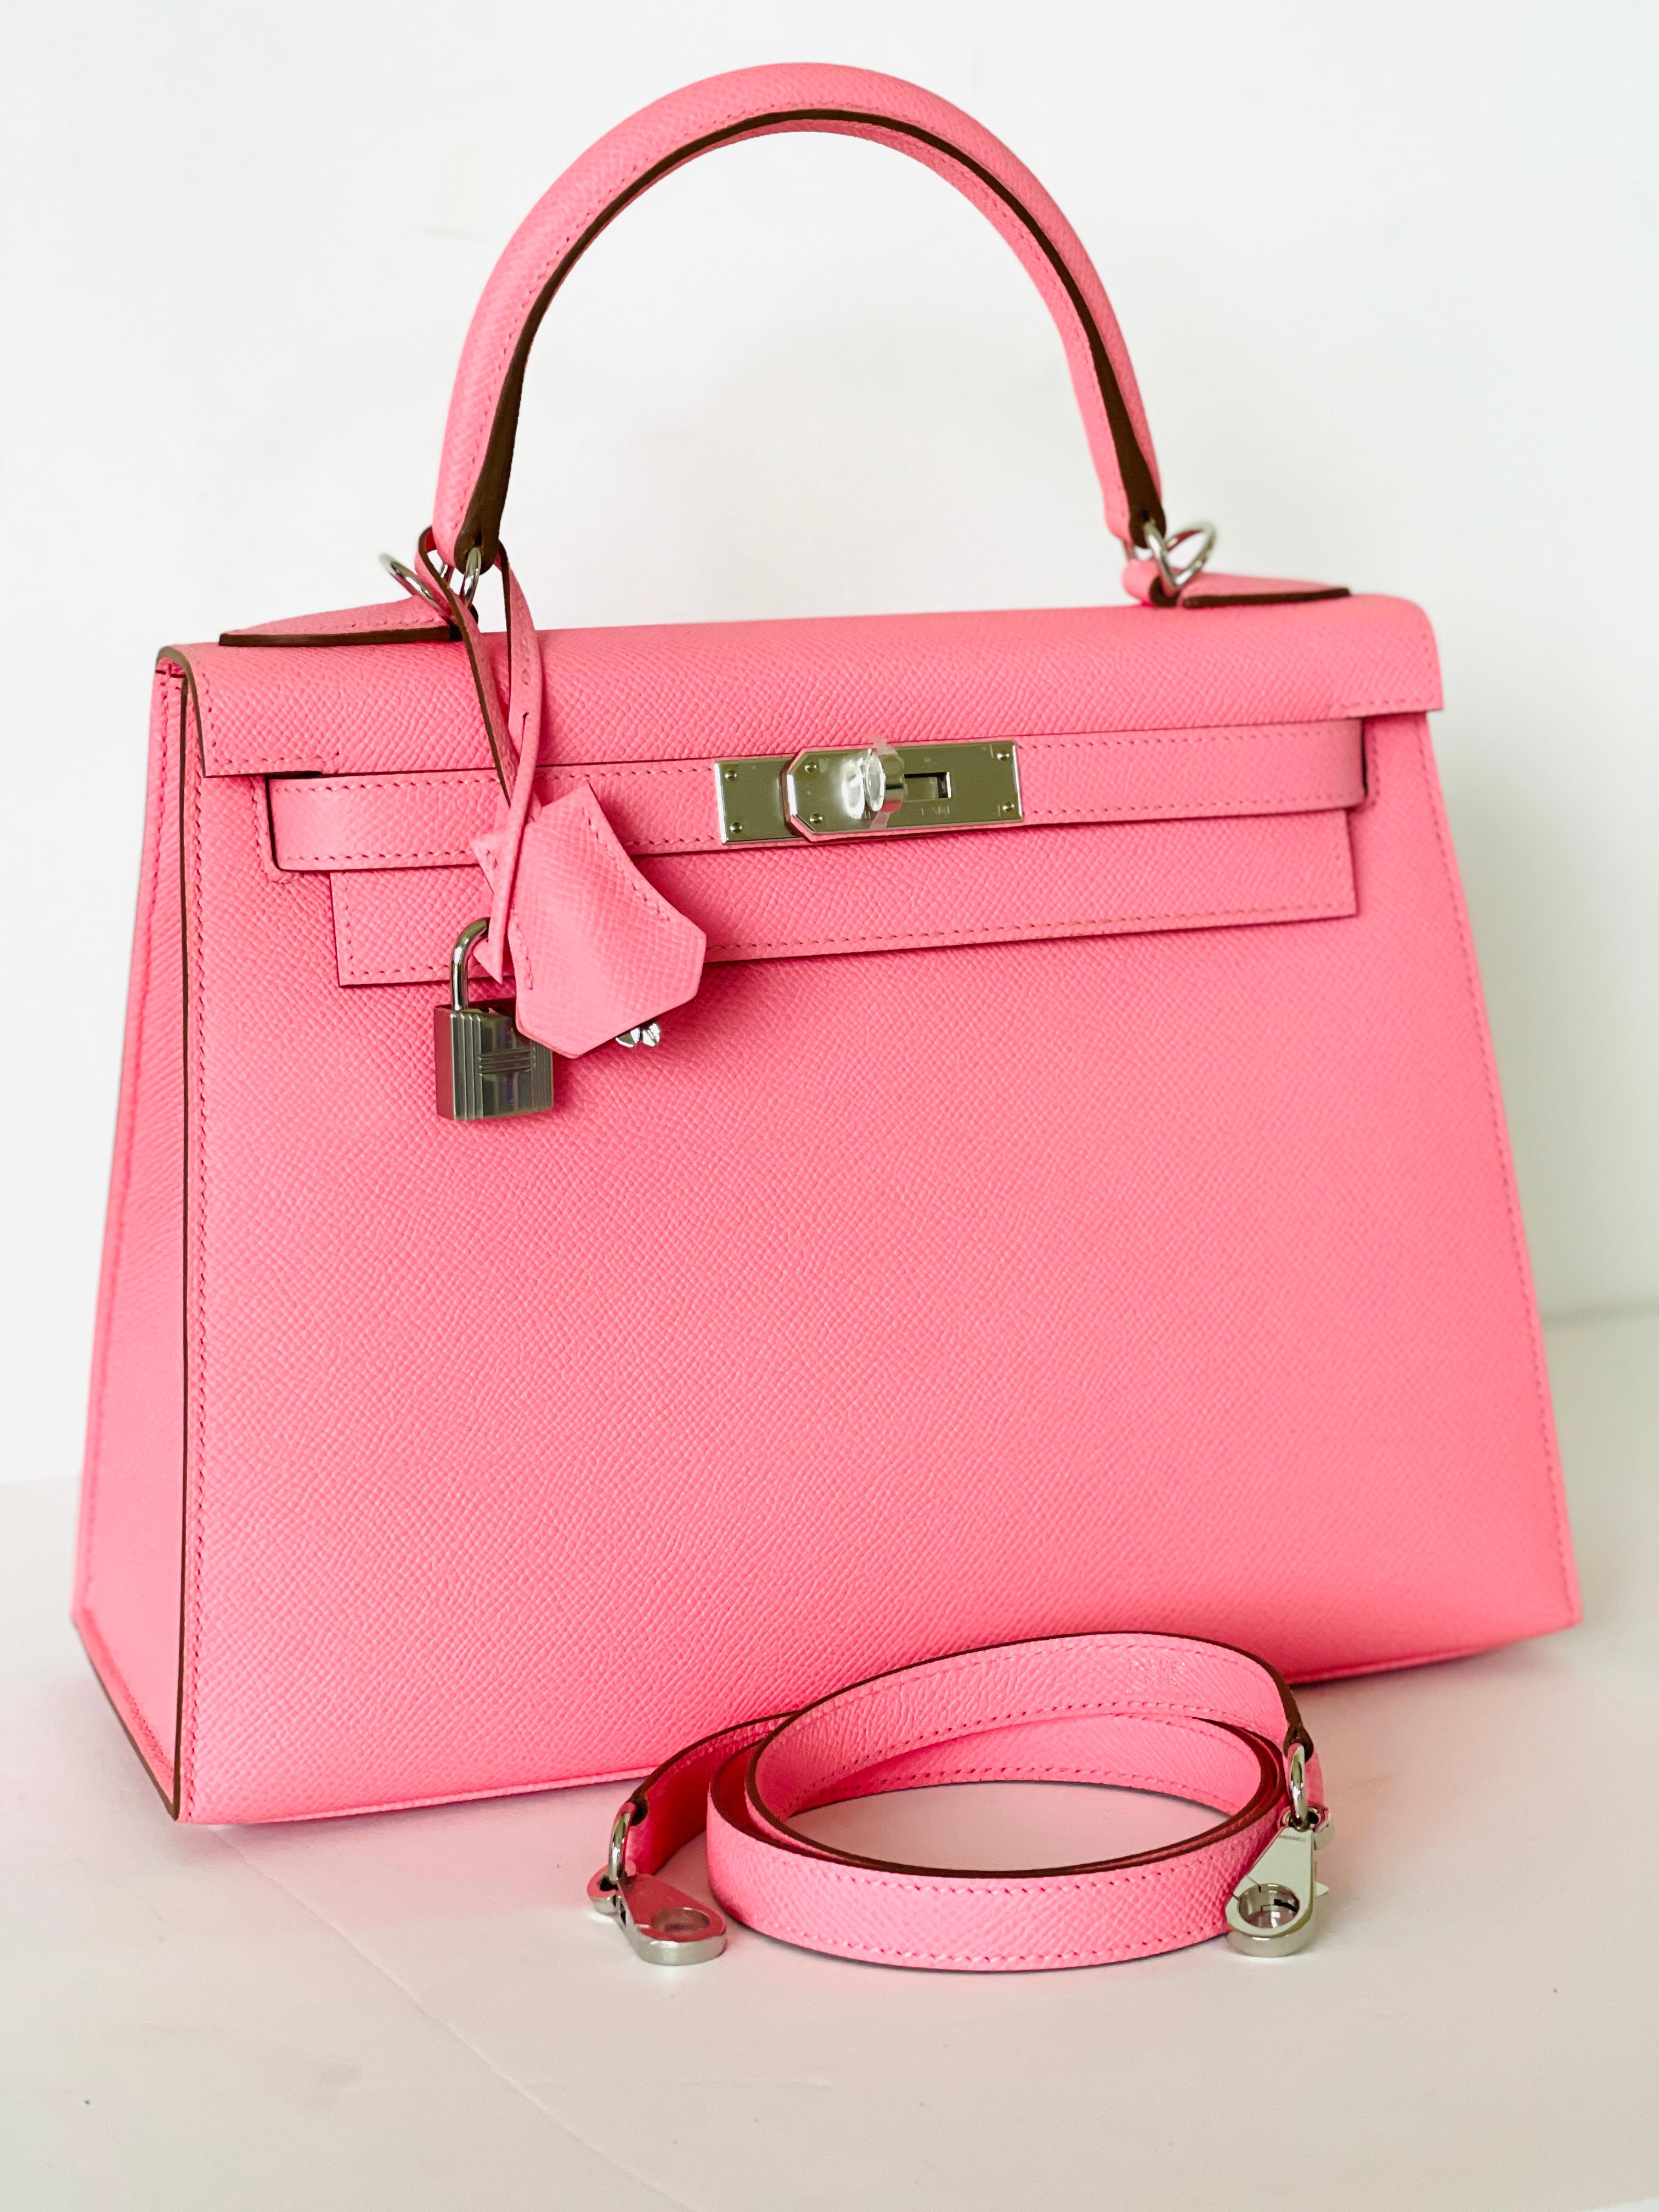 Hermes Kelly 28cm Rose Confetti Pink Sellier Shoulder Bag Y Stamp, 2020 3